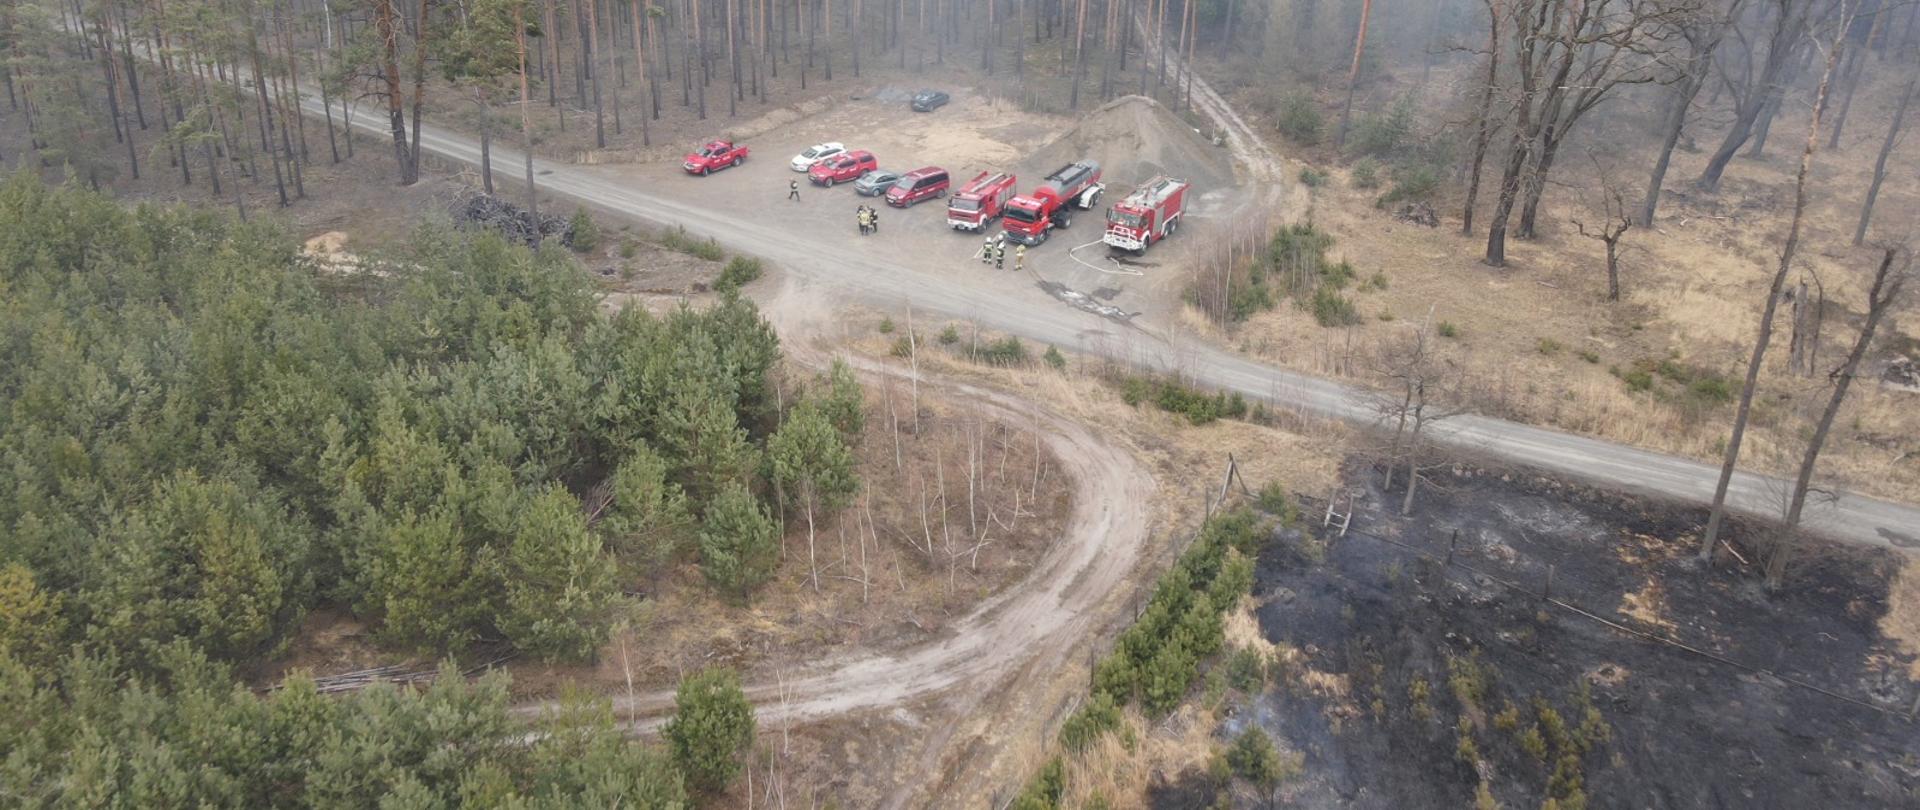 Zdjęcie wykonane z drona. Ukazujące punkt przyjęcia sił straży pożarnej i teren zniszczony pożarem. 